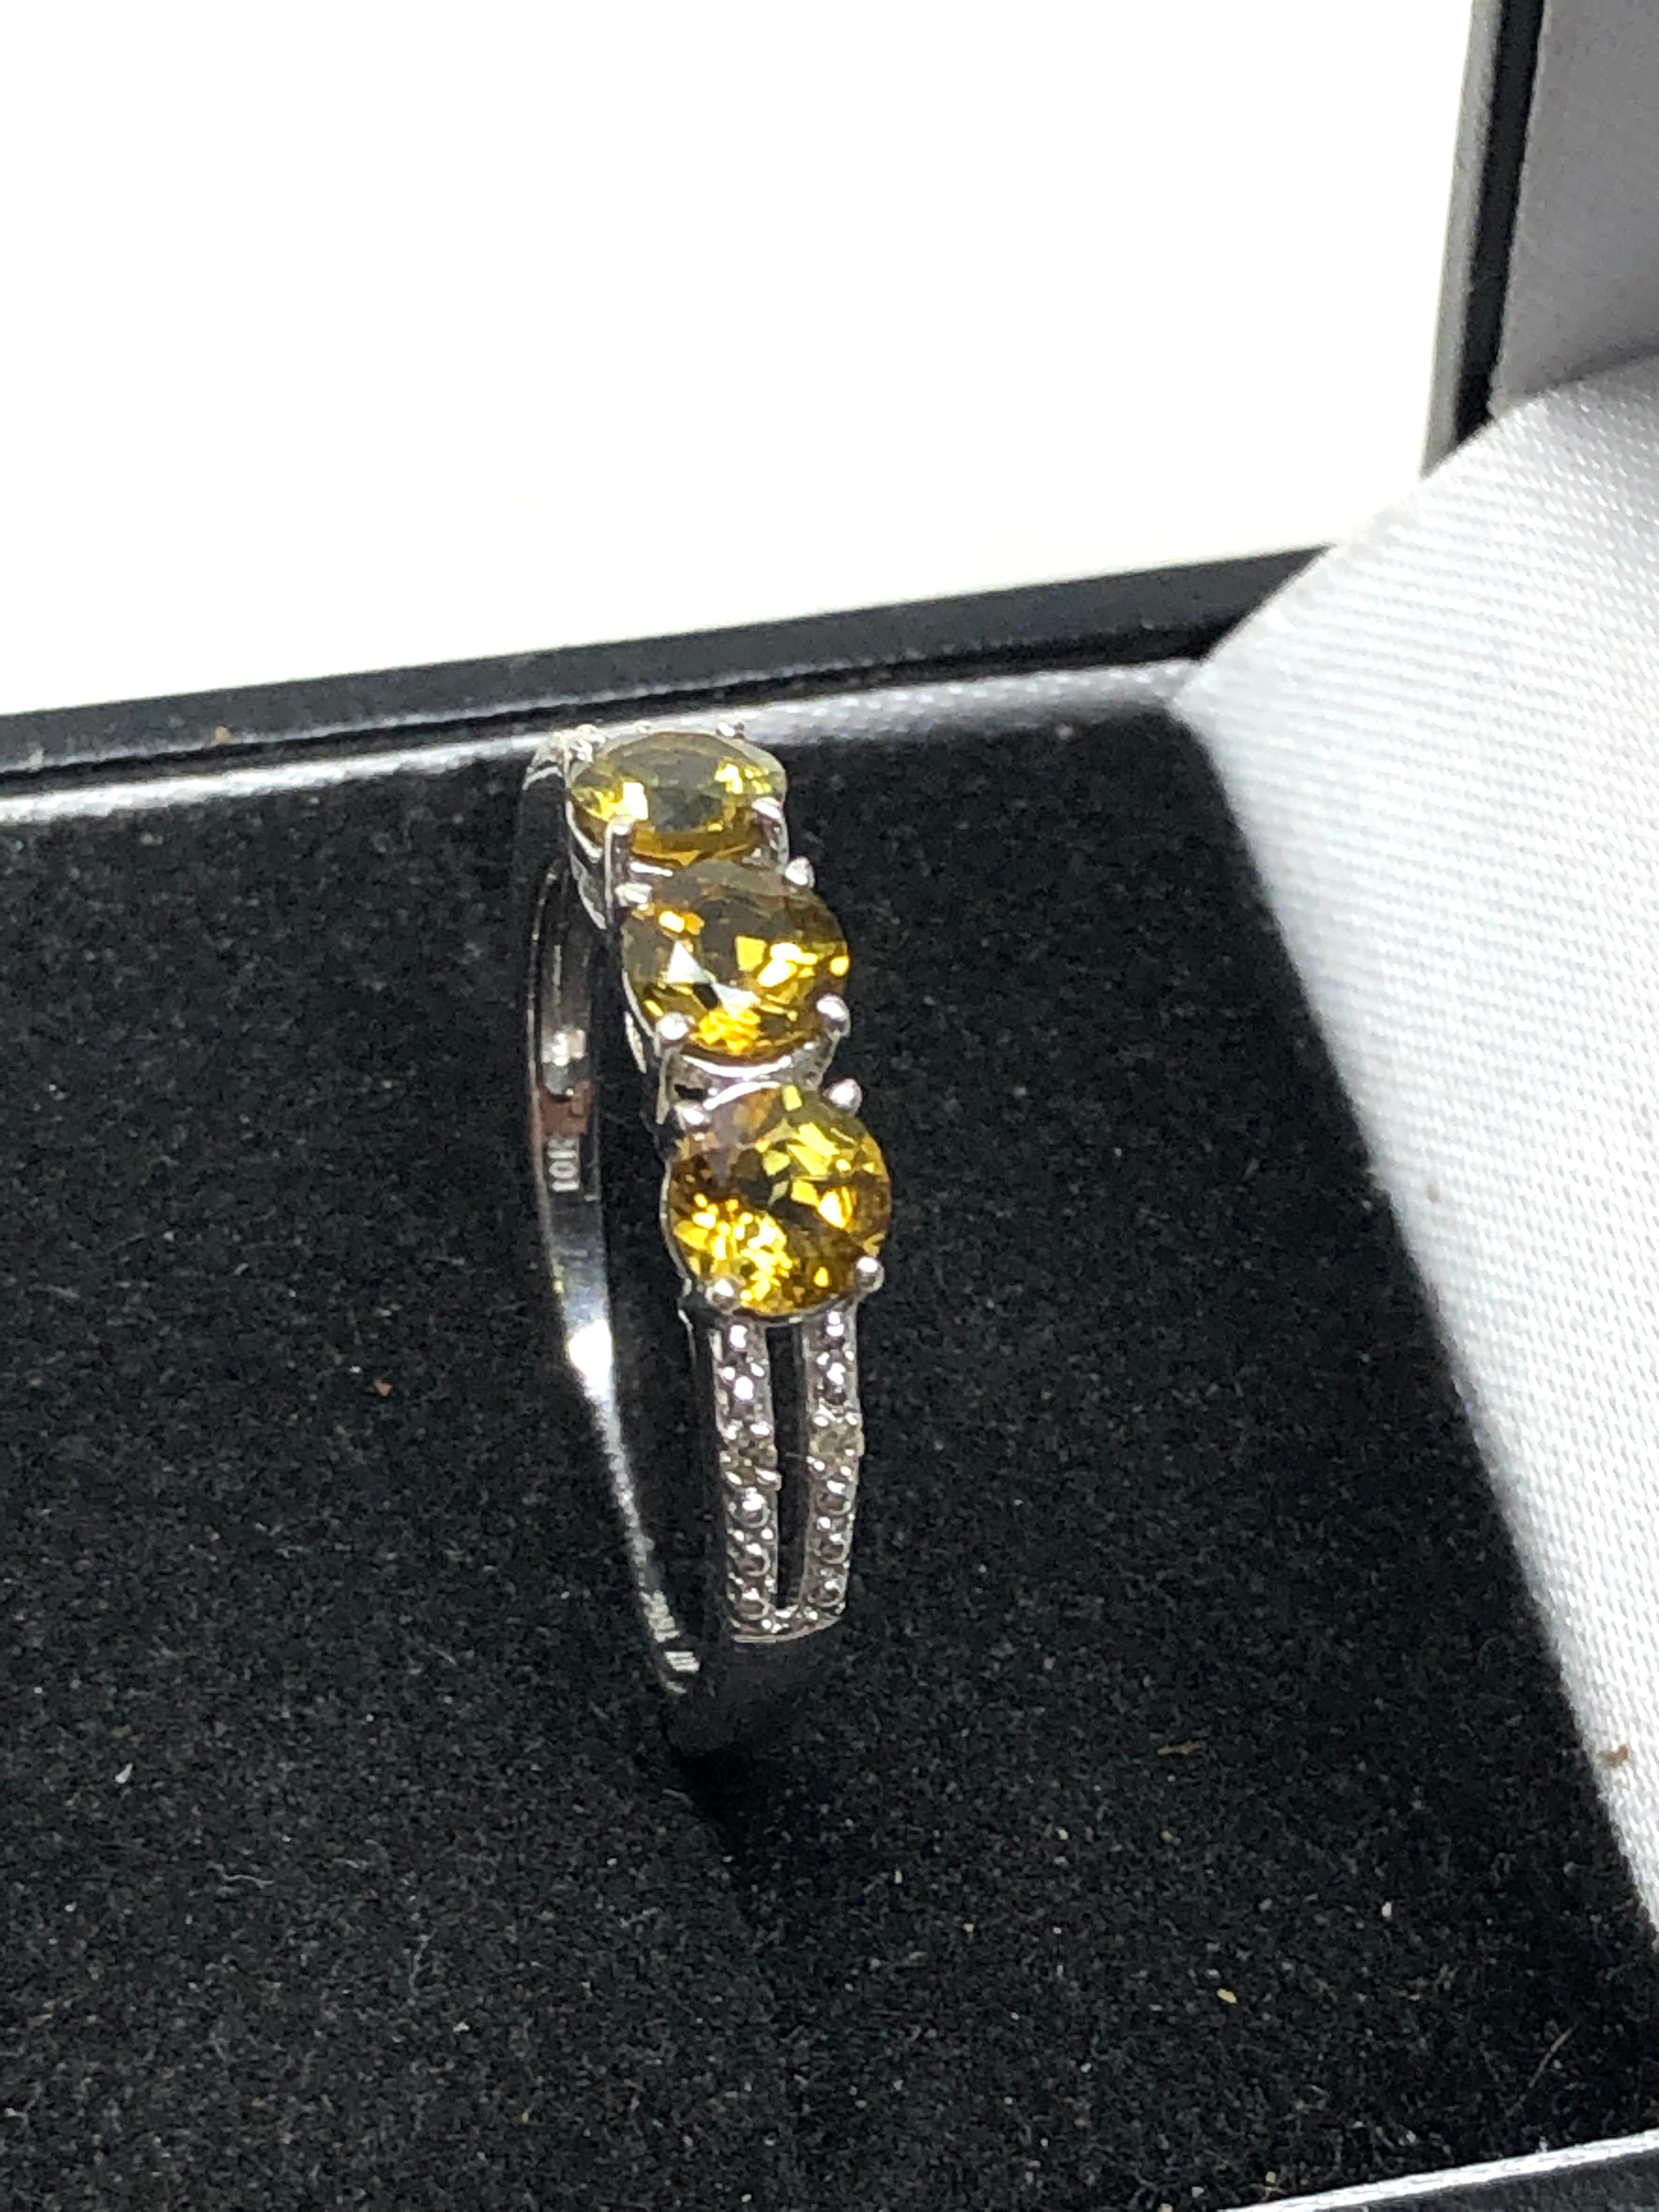 10ct white gold yellow sapphire & diamond ring weight 2.5g - Image 3 of 4